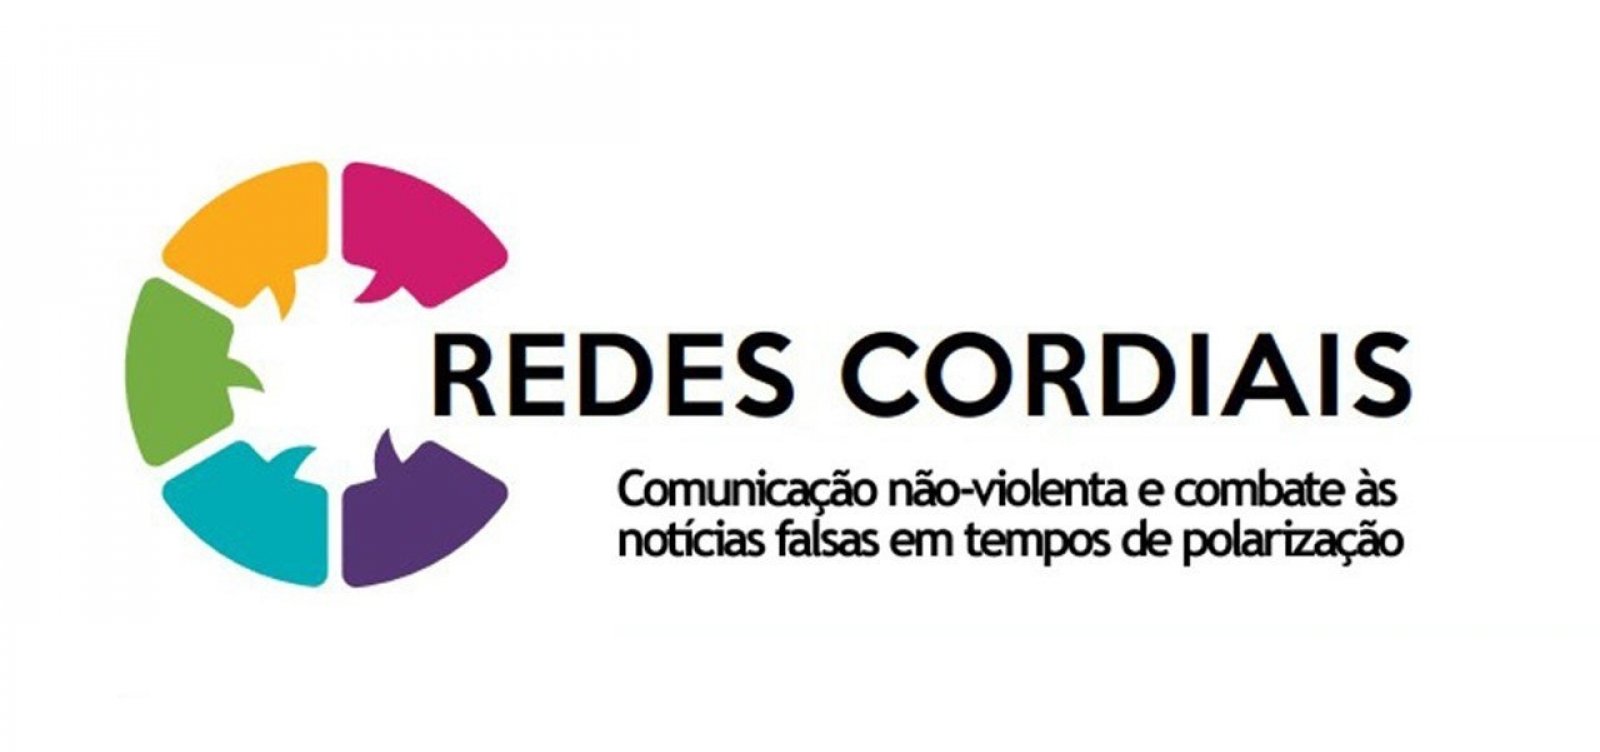 'Redes Cordiais': projeto combate fake news em meio à pandemia de coronavírus